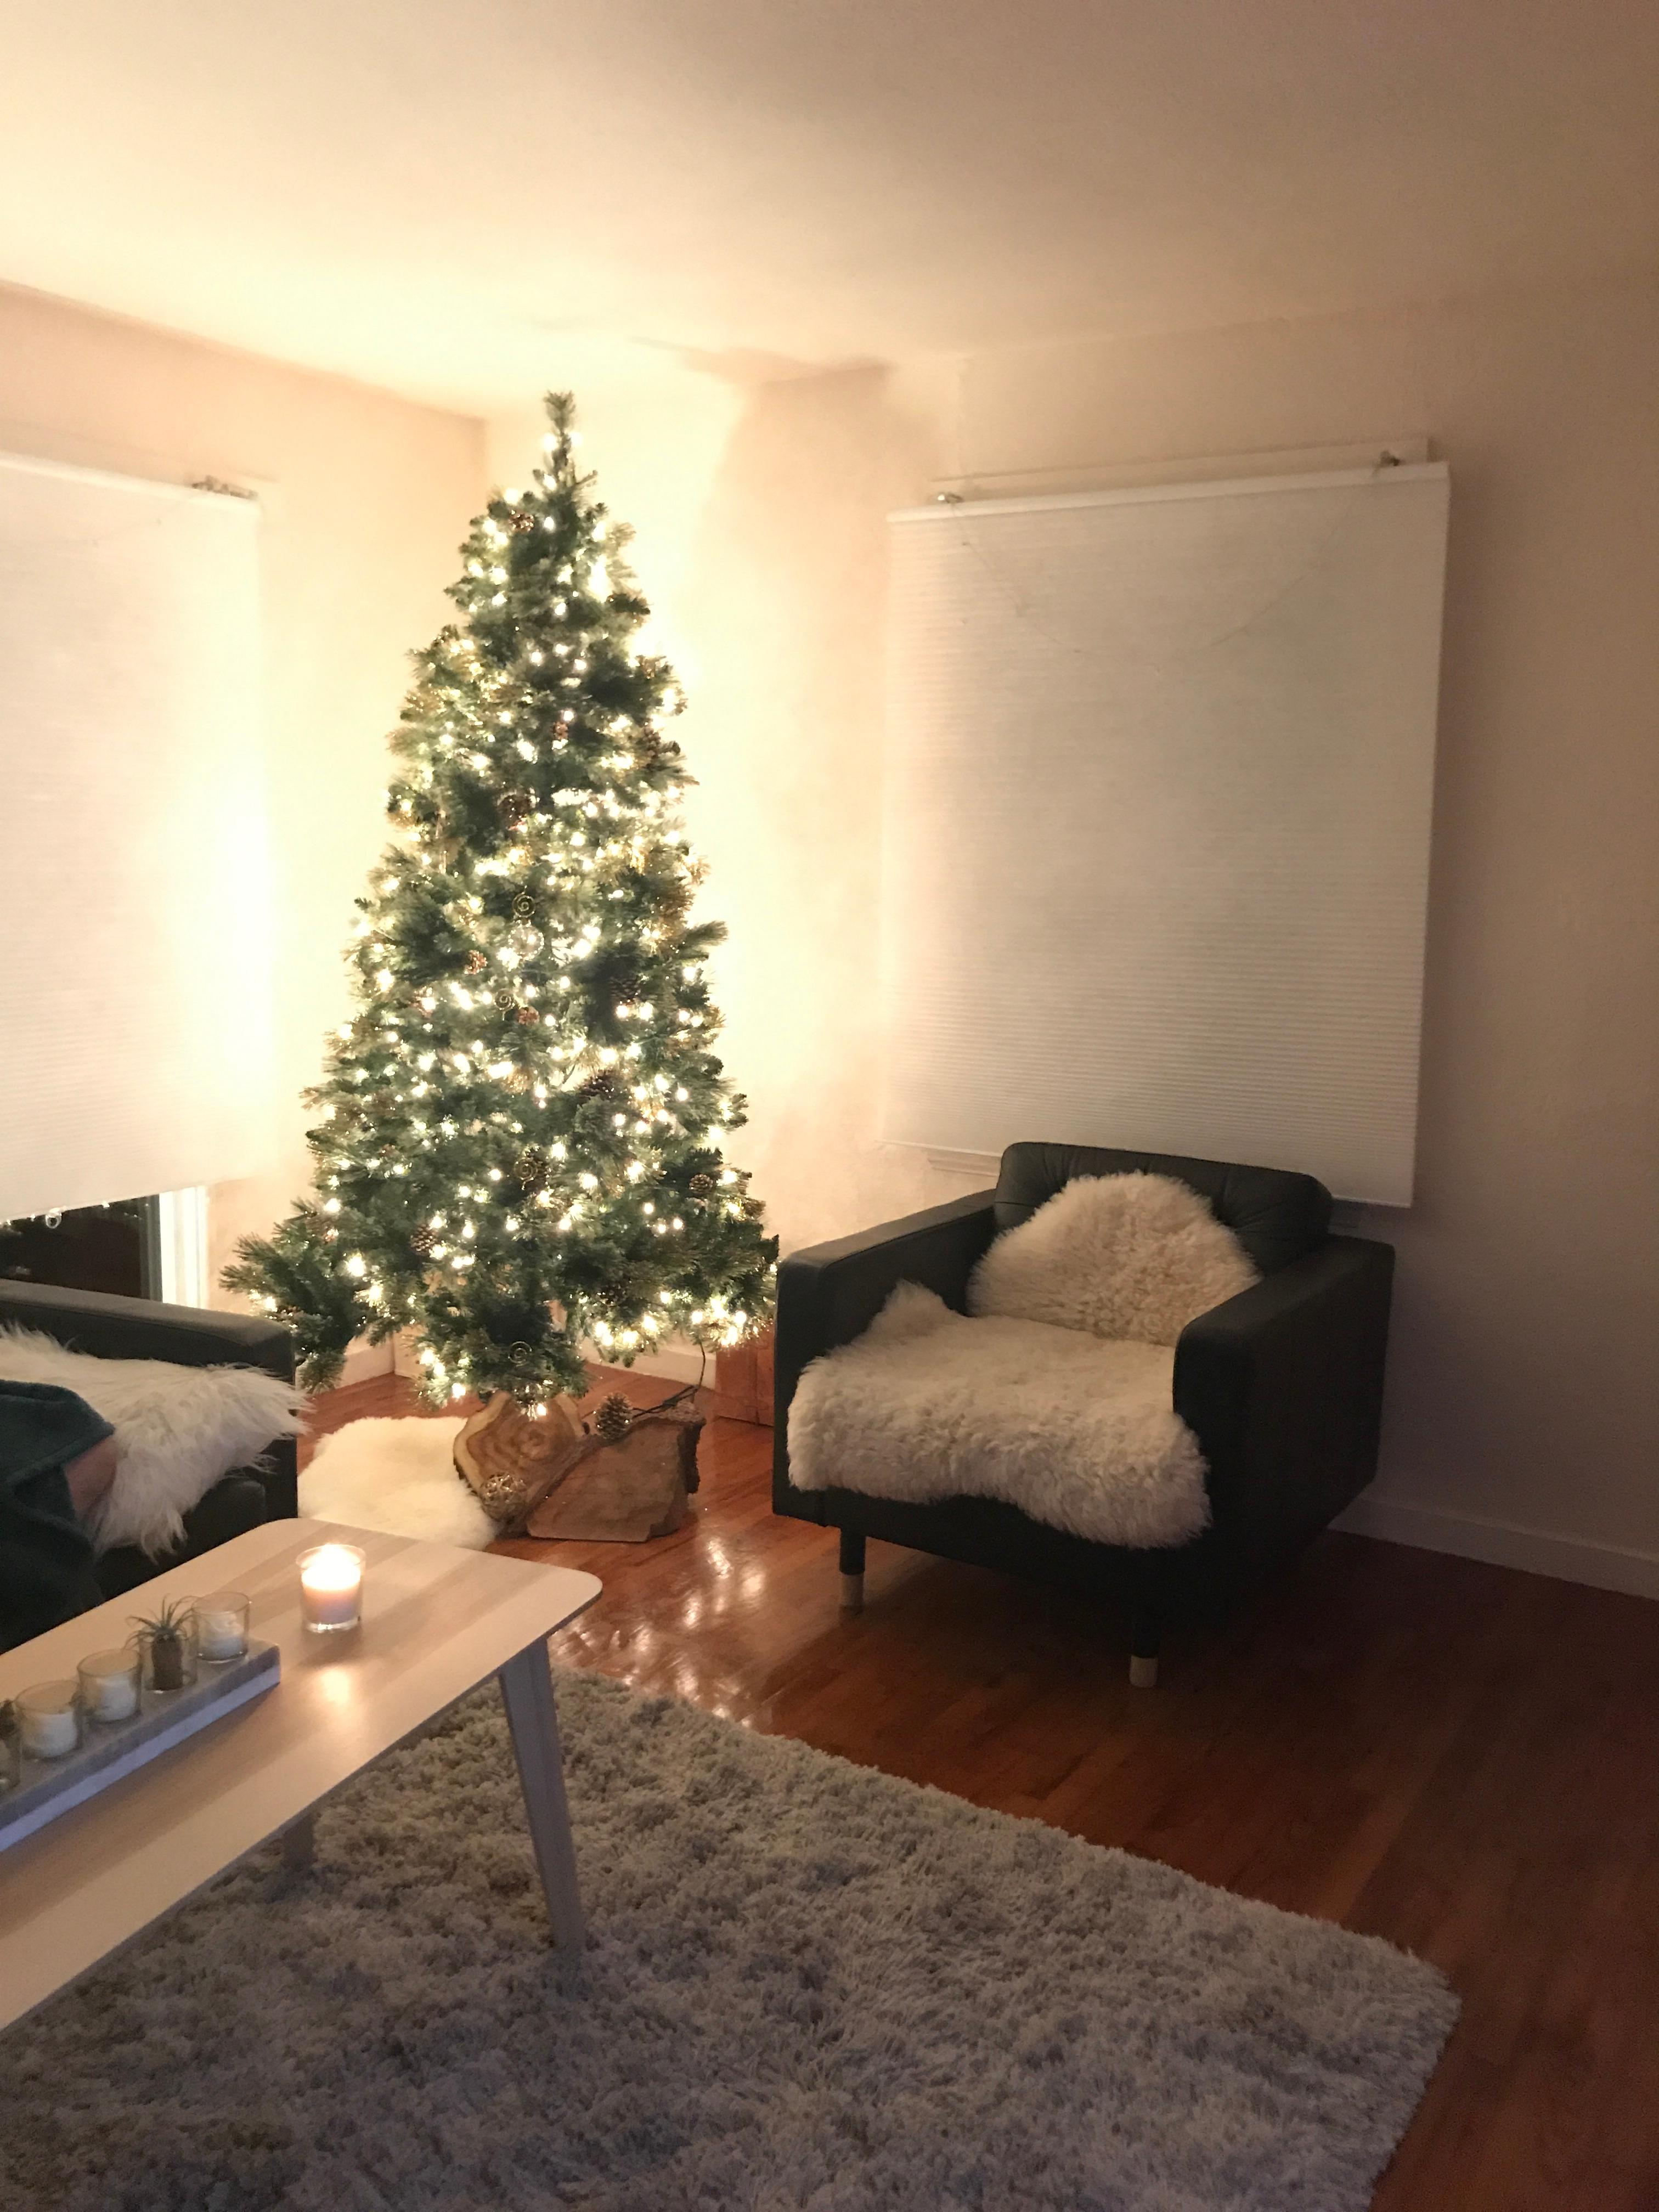 Weihnachtsbaum geschmückt mit Tannenzapfen, transparenten Kugeln und ein paar Einzelstücken. #couchliebt #couchstyle
